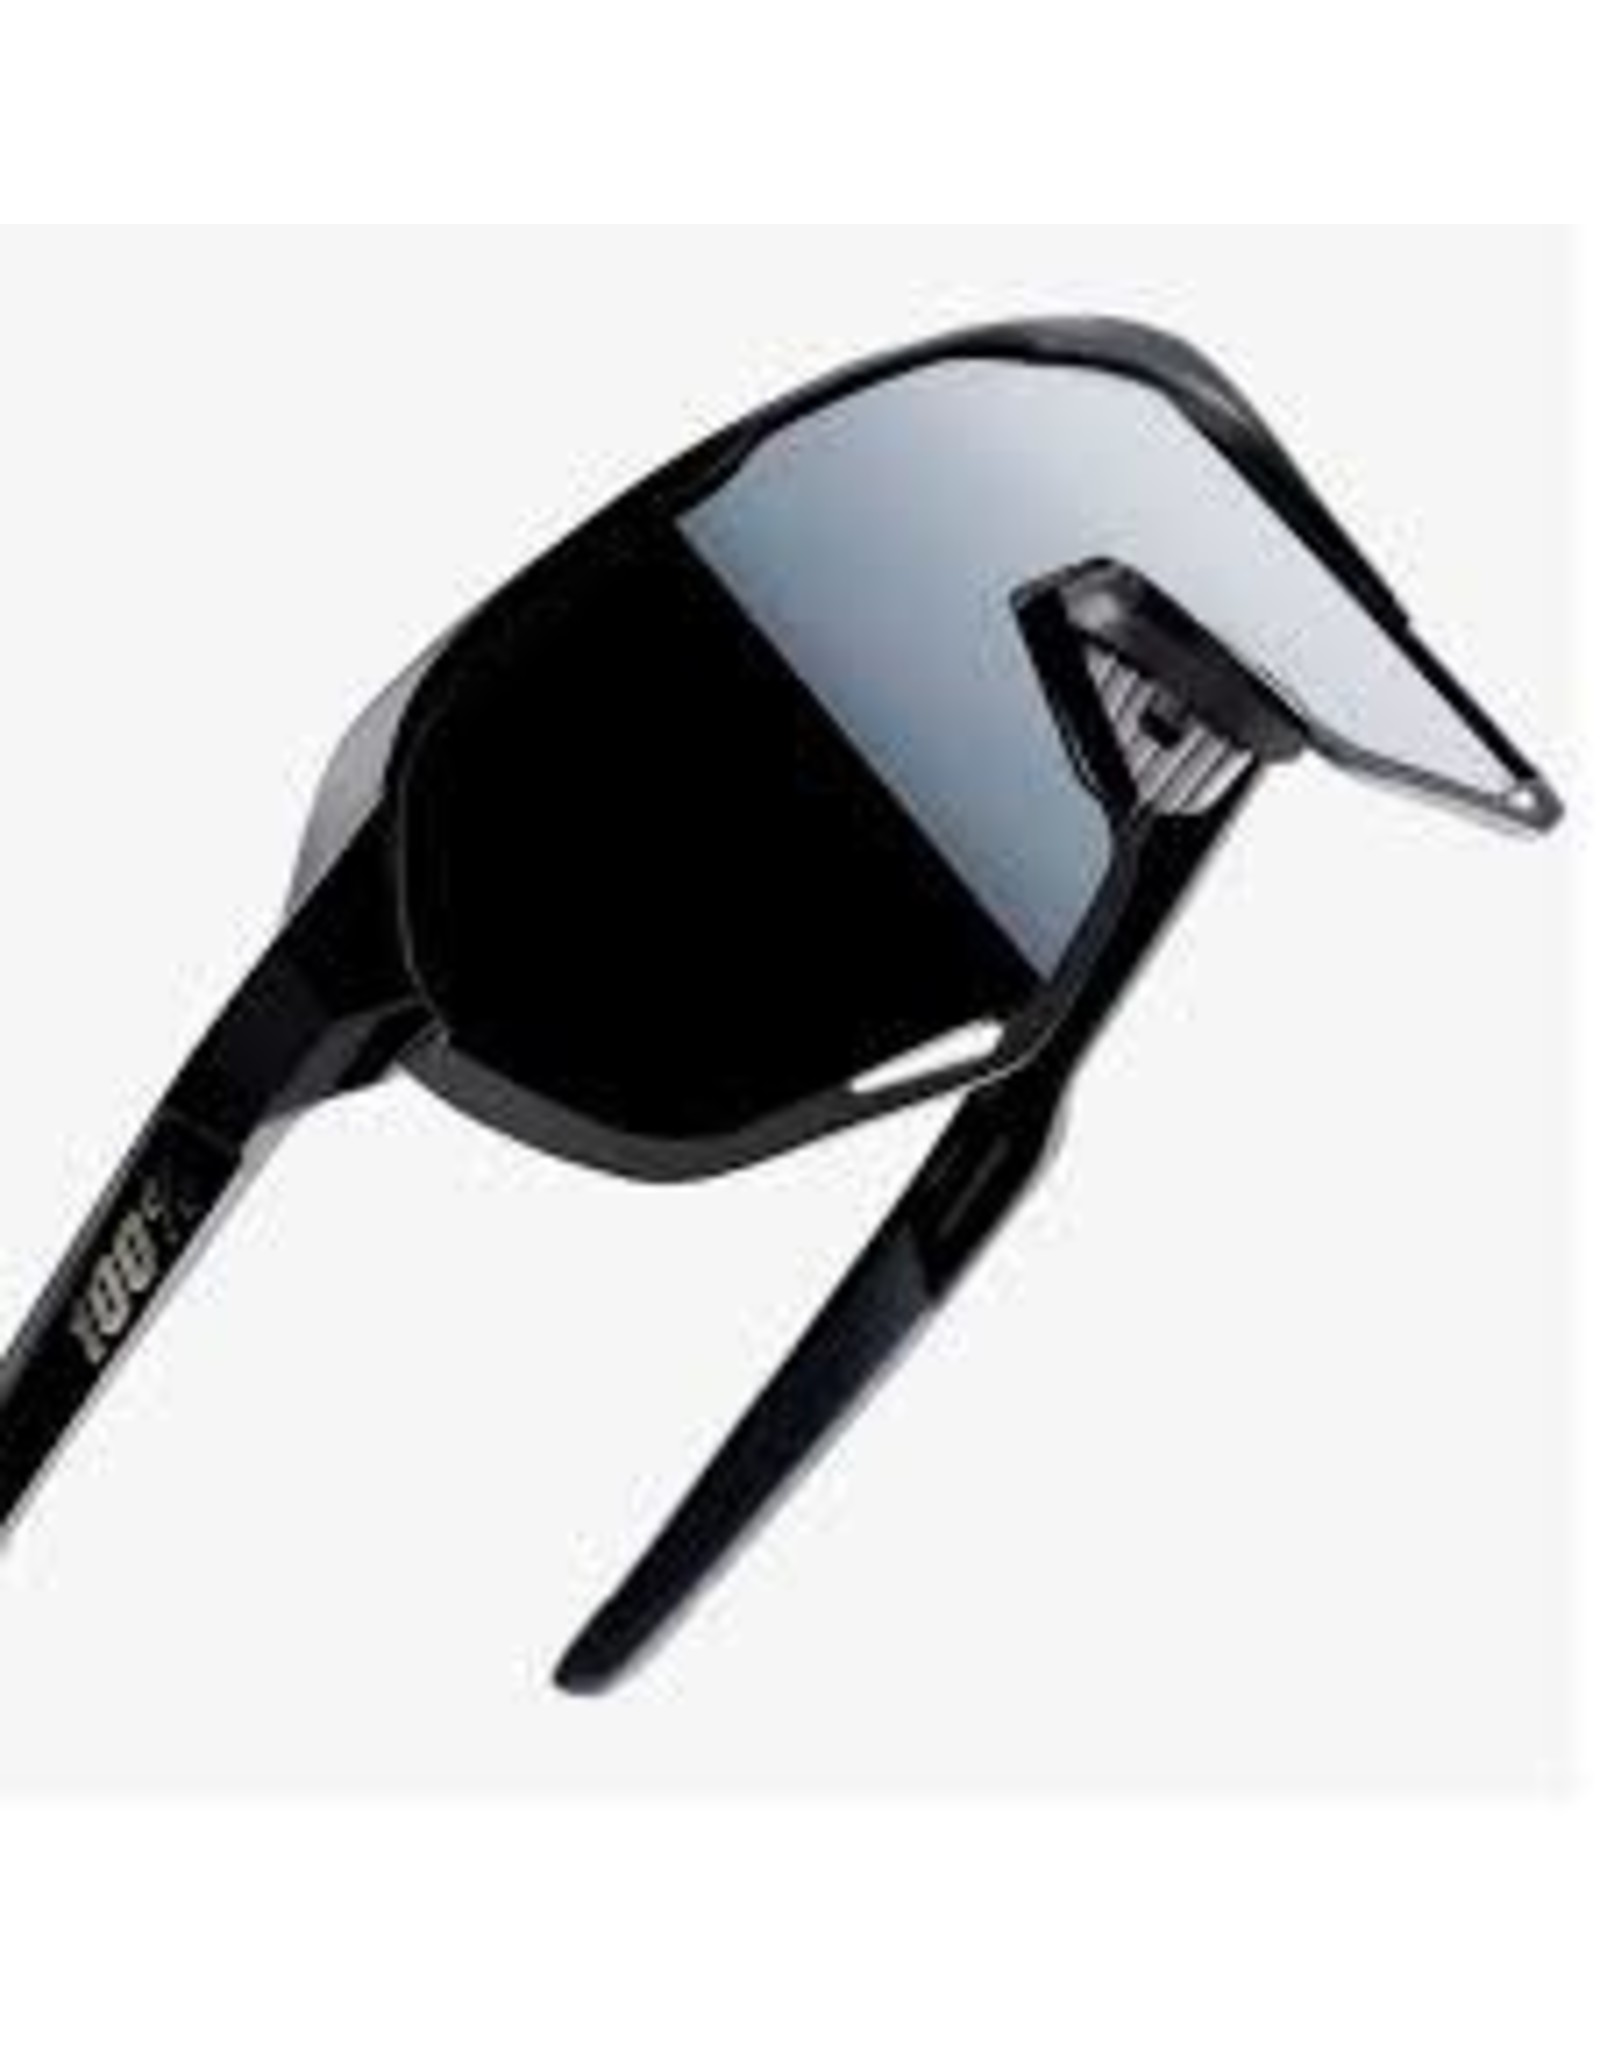 100% Eyewear 100% S2 - Soft Tact Black - Smoke Lens